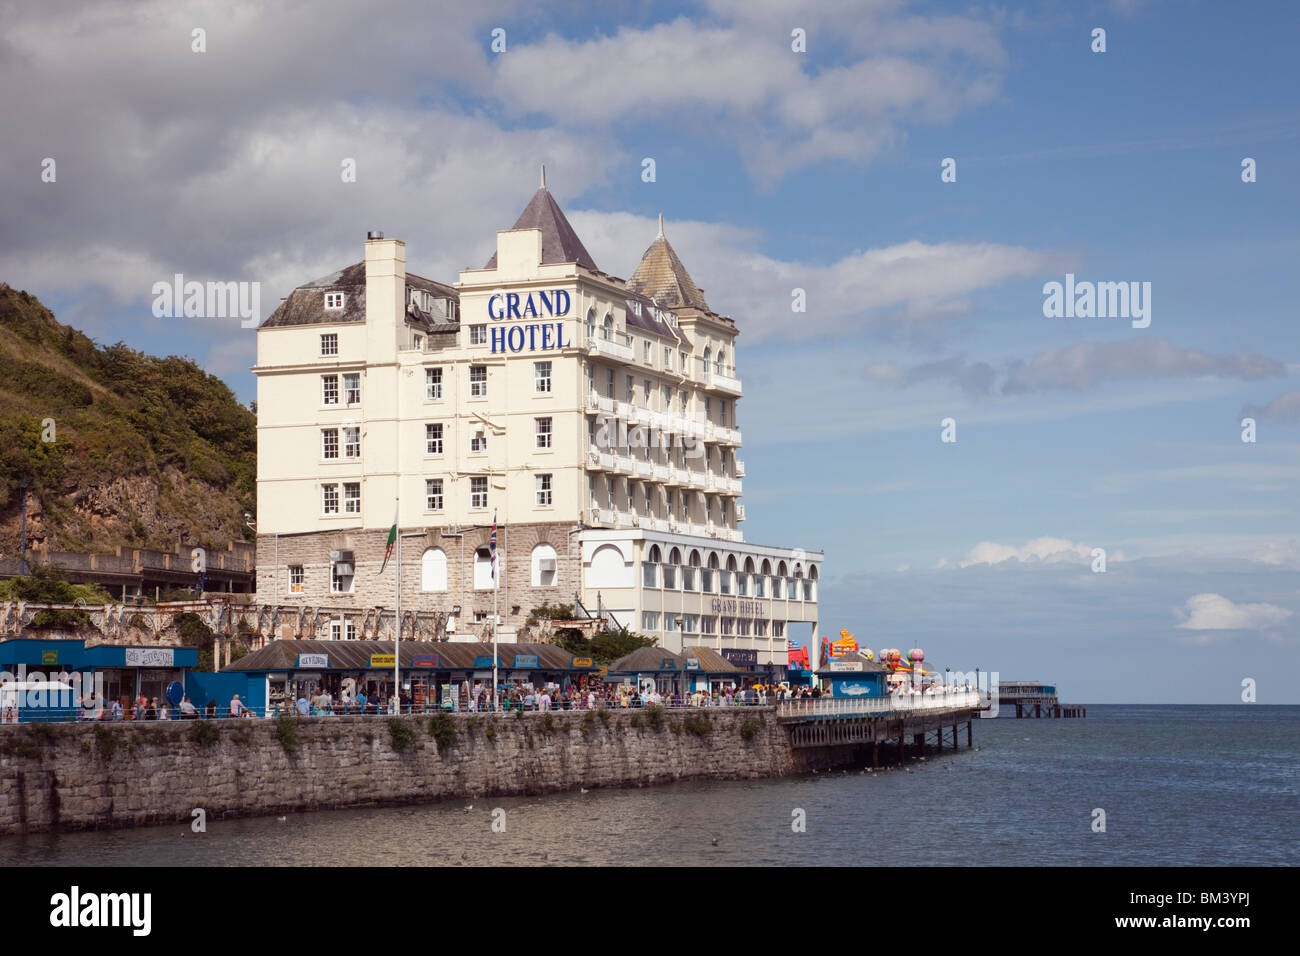 Il Grand Hotel imponente edificio vittoriano sul fronte mare affacciato sulla Baia di Ormes in località turistica sulla costa gallese. Spiaggia del Nord Galles Llandudno Regno Unito Gran Bretagna Foto Stock